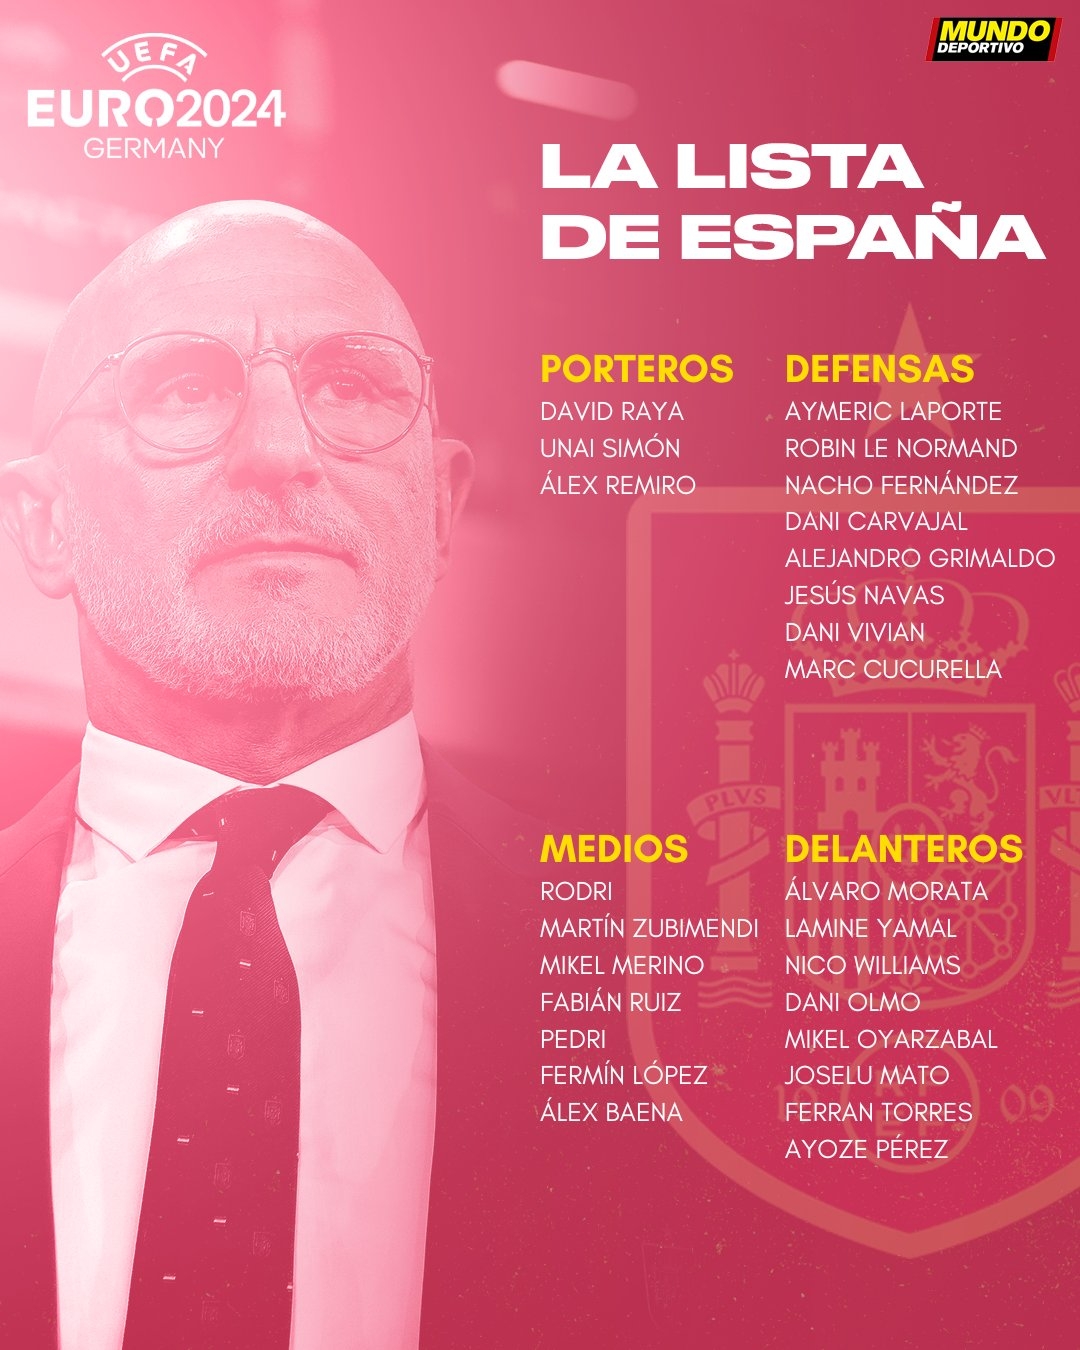 西班牙公布欧洲杯最终名单：纳乔、罗德里领衔，库巴西落选